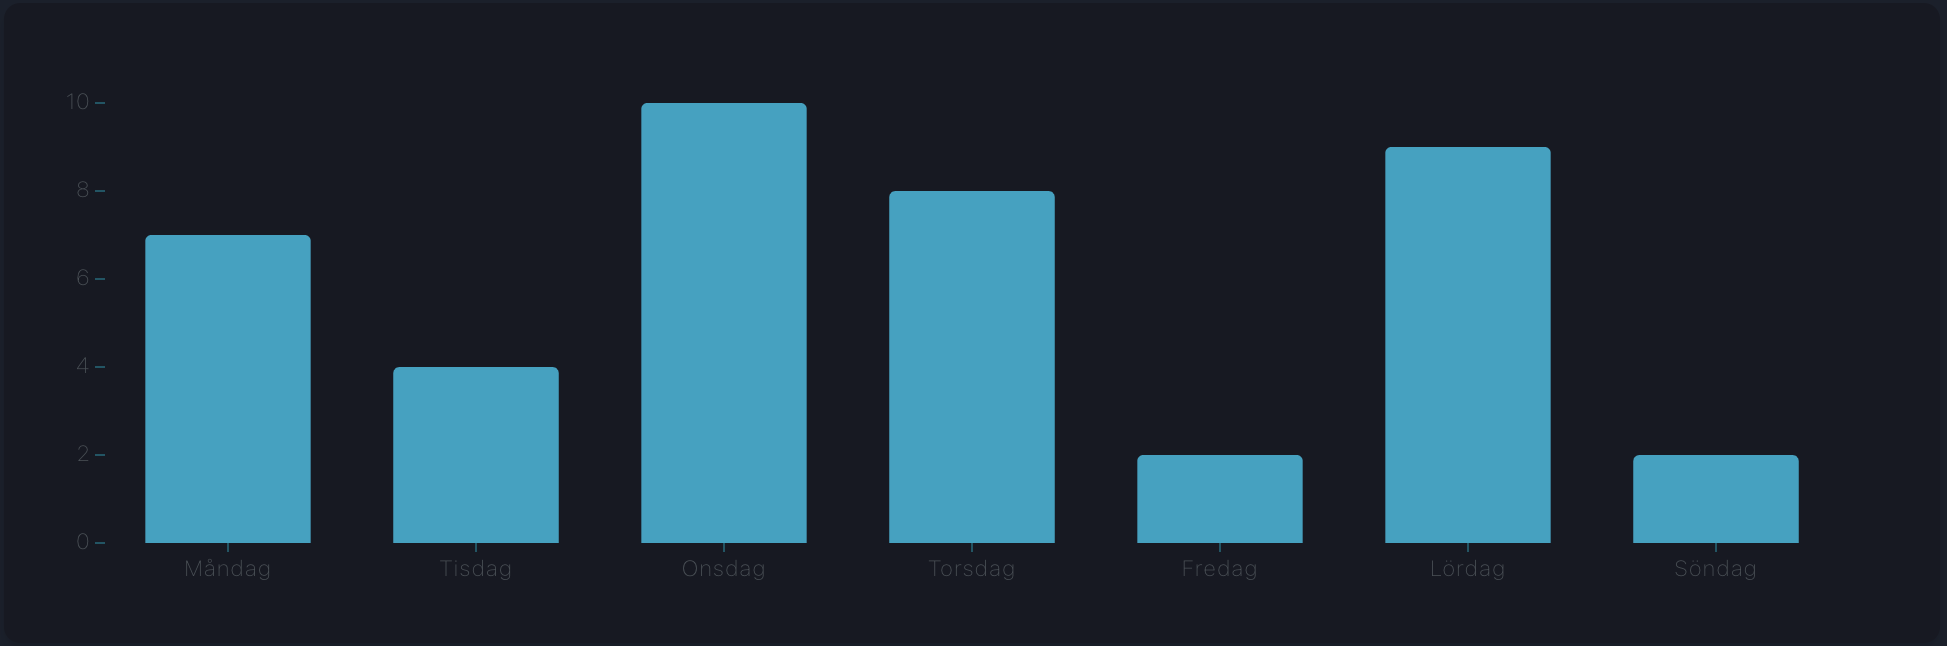 Skärmbild som visar antal bokningar per veckodag. Antalet varierar kraftigt.